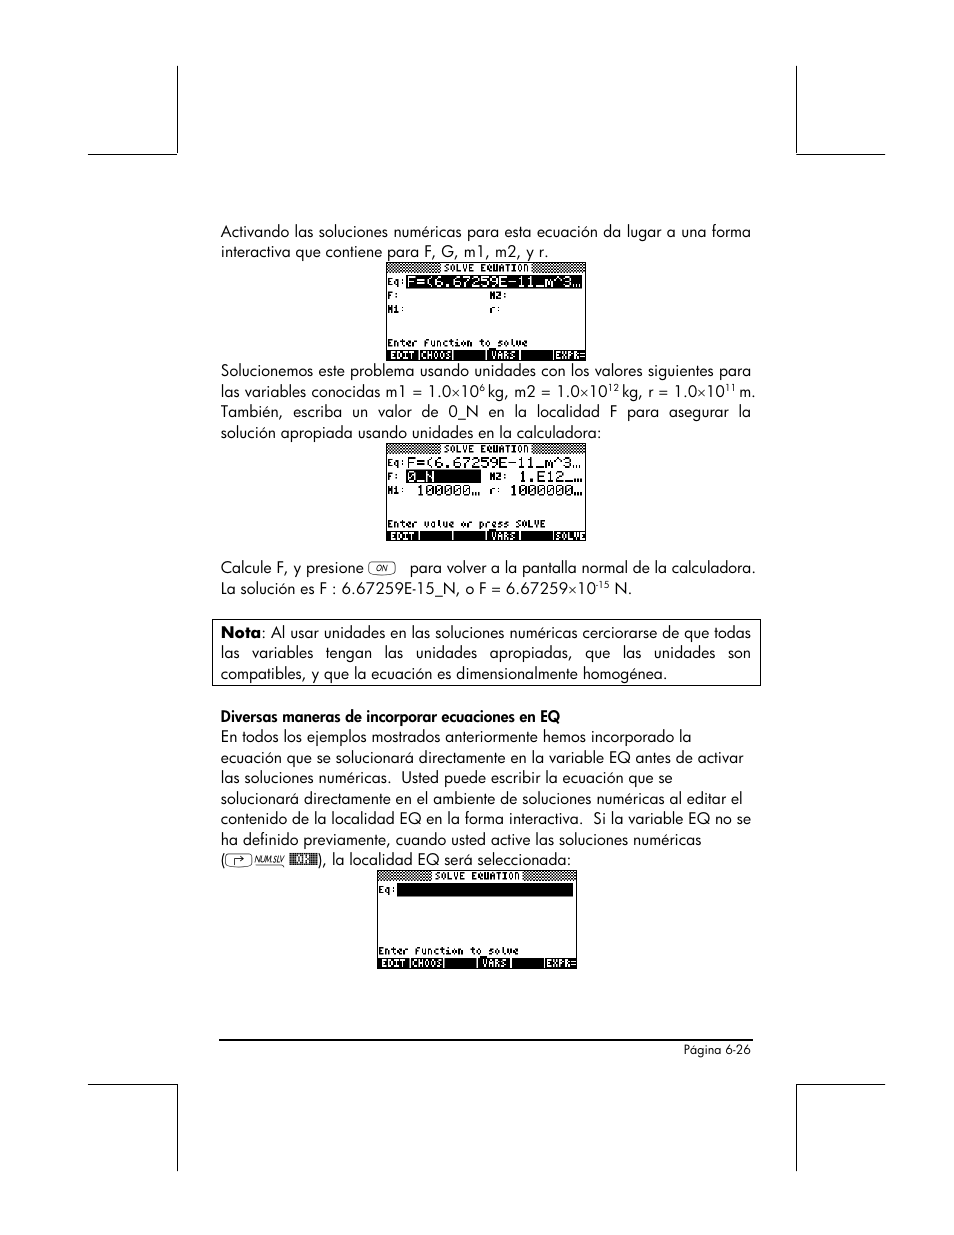 HP Calculadora Gráfica HP 49g Manual del usuario | Página 229 / 891